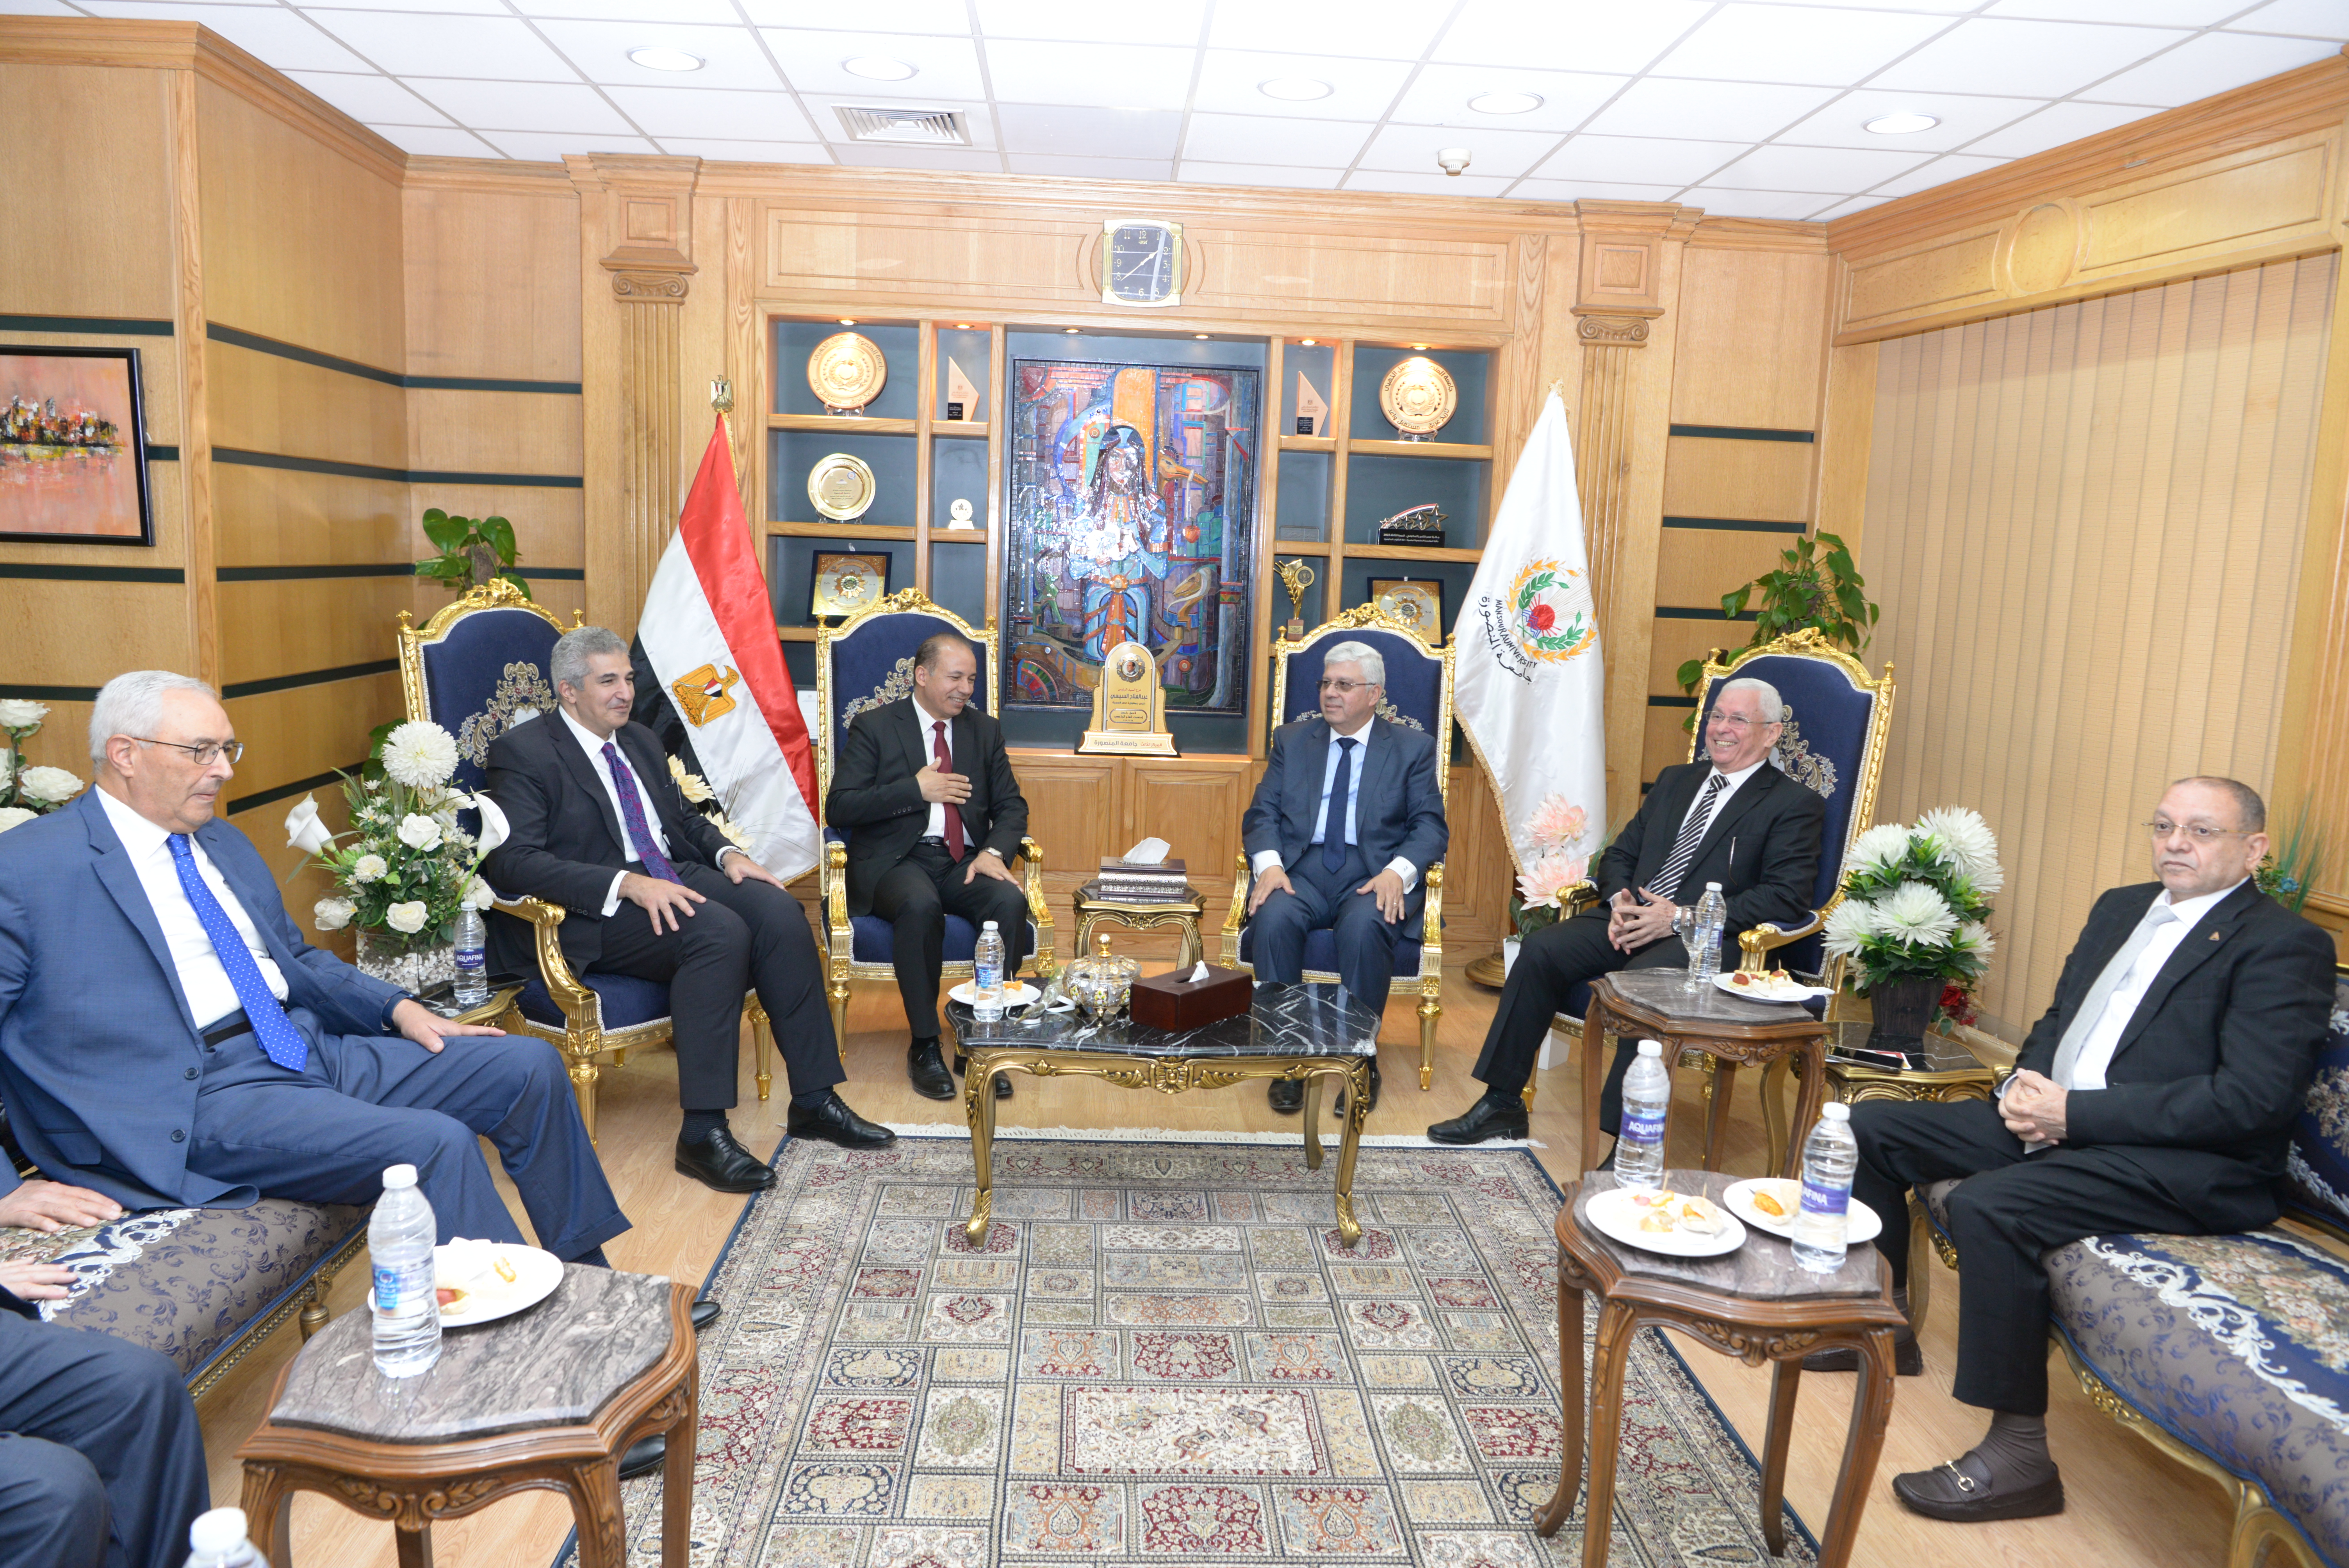 اجتماع المجلس الأعلى للجامعات برحاب جامعة المنصورة بتاريخ 20 مايو